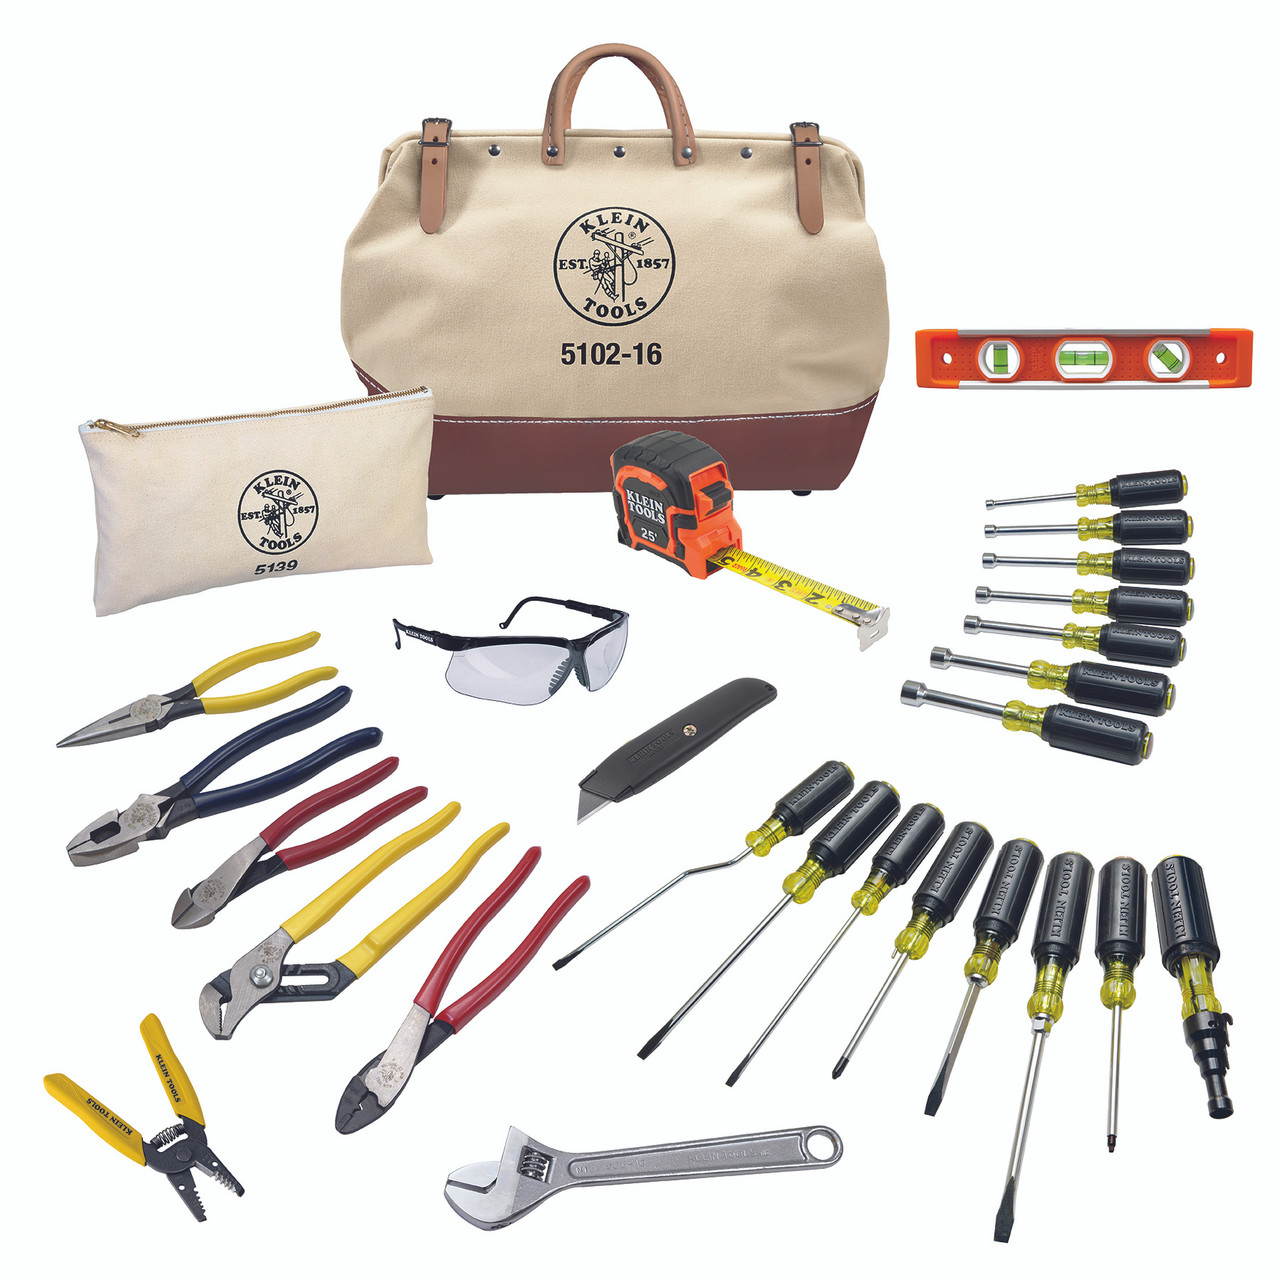 Mochila de herramientas electrico 27 herramientas (45528